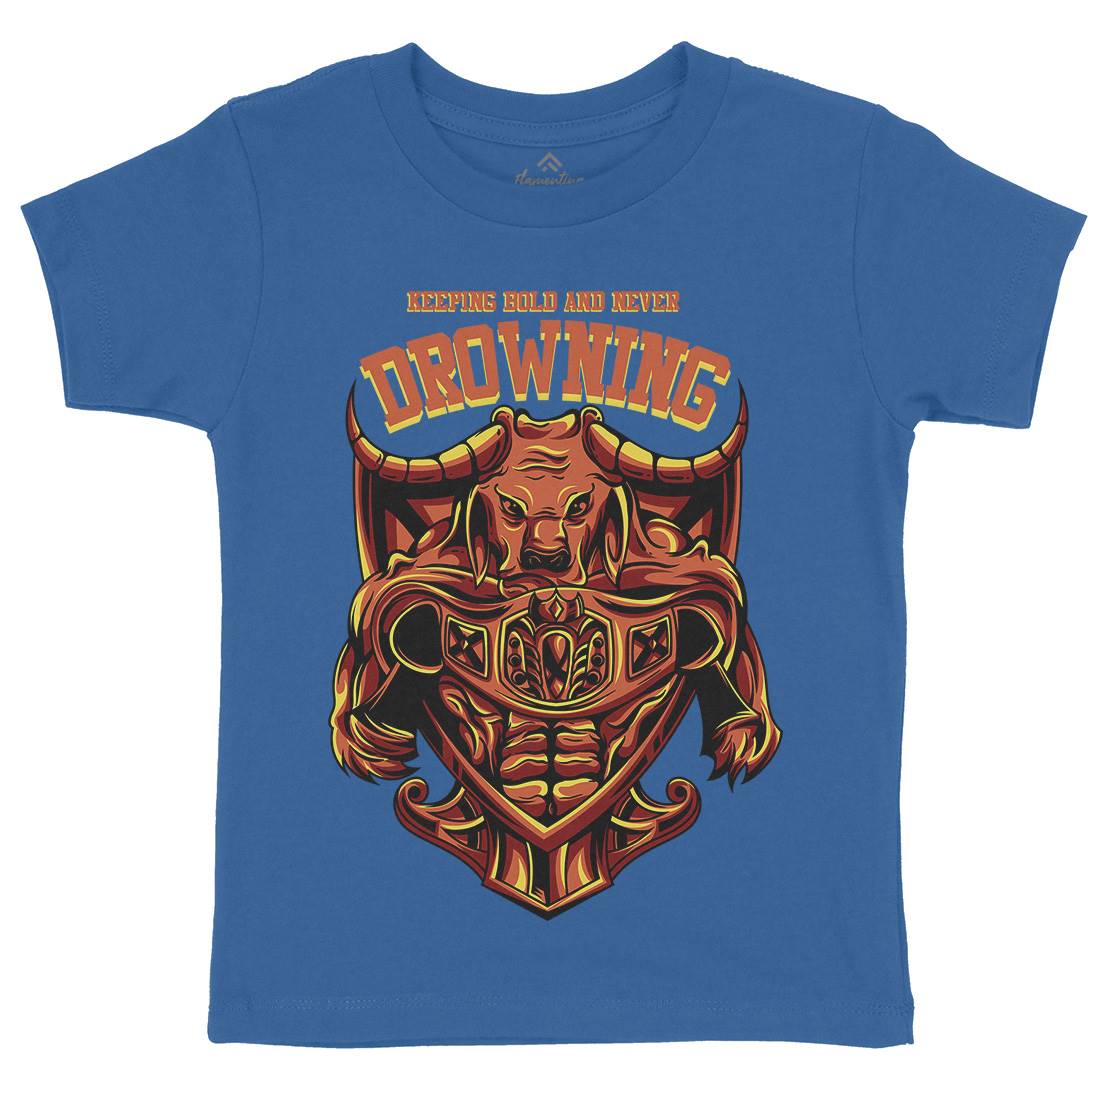 Drowning Bull Kids Crew Neck T-Shirt Warriors D763